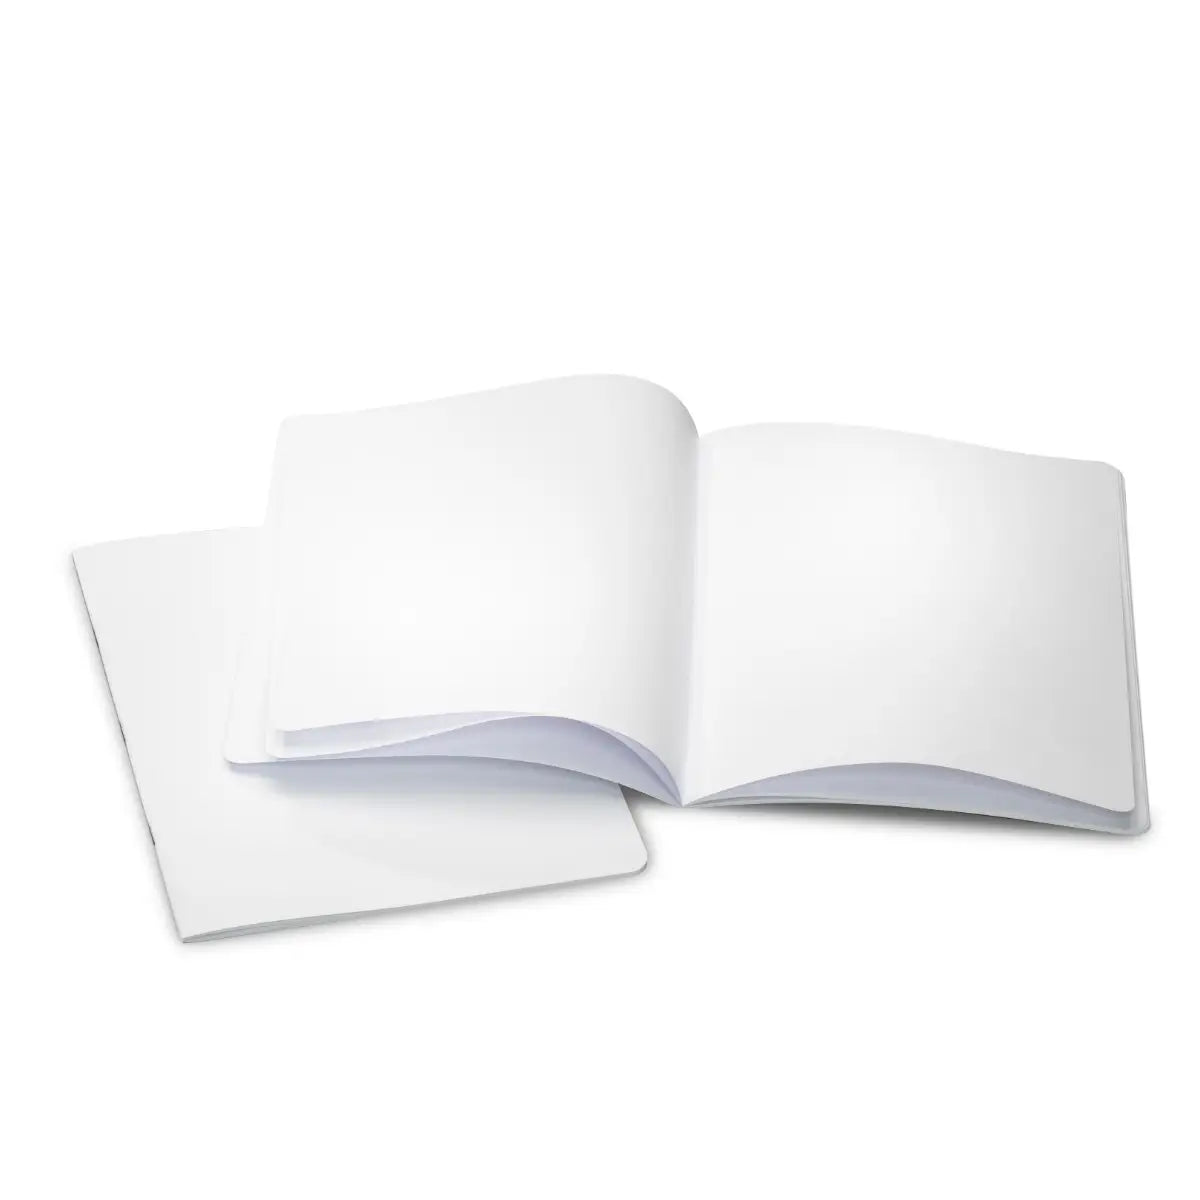 Classic Main Lesson Book, Portrait (9.45"x12.6"), Blank (No Onion Skin) Blank Main Lesson Book - Alder & Alouette